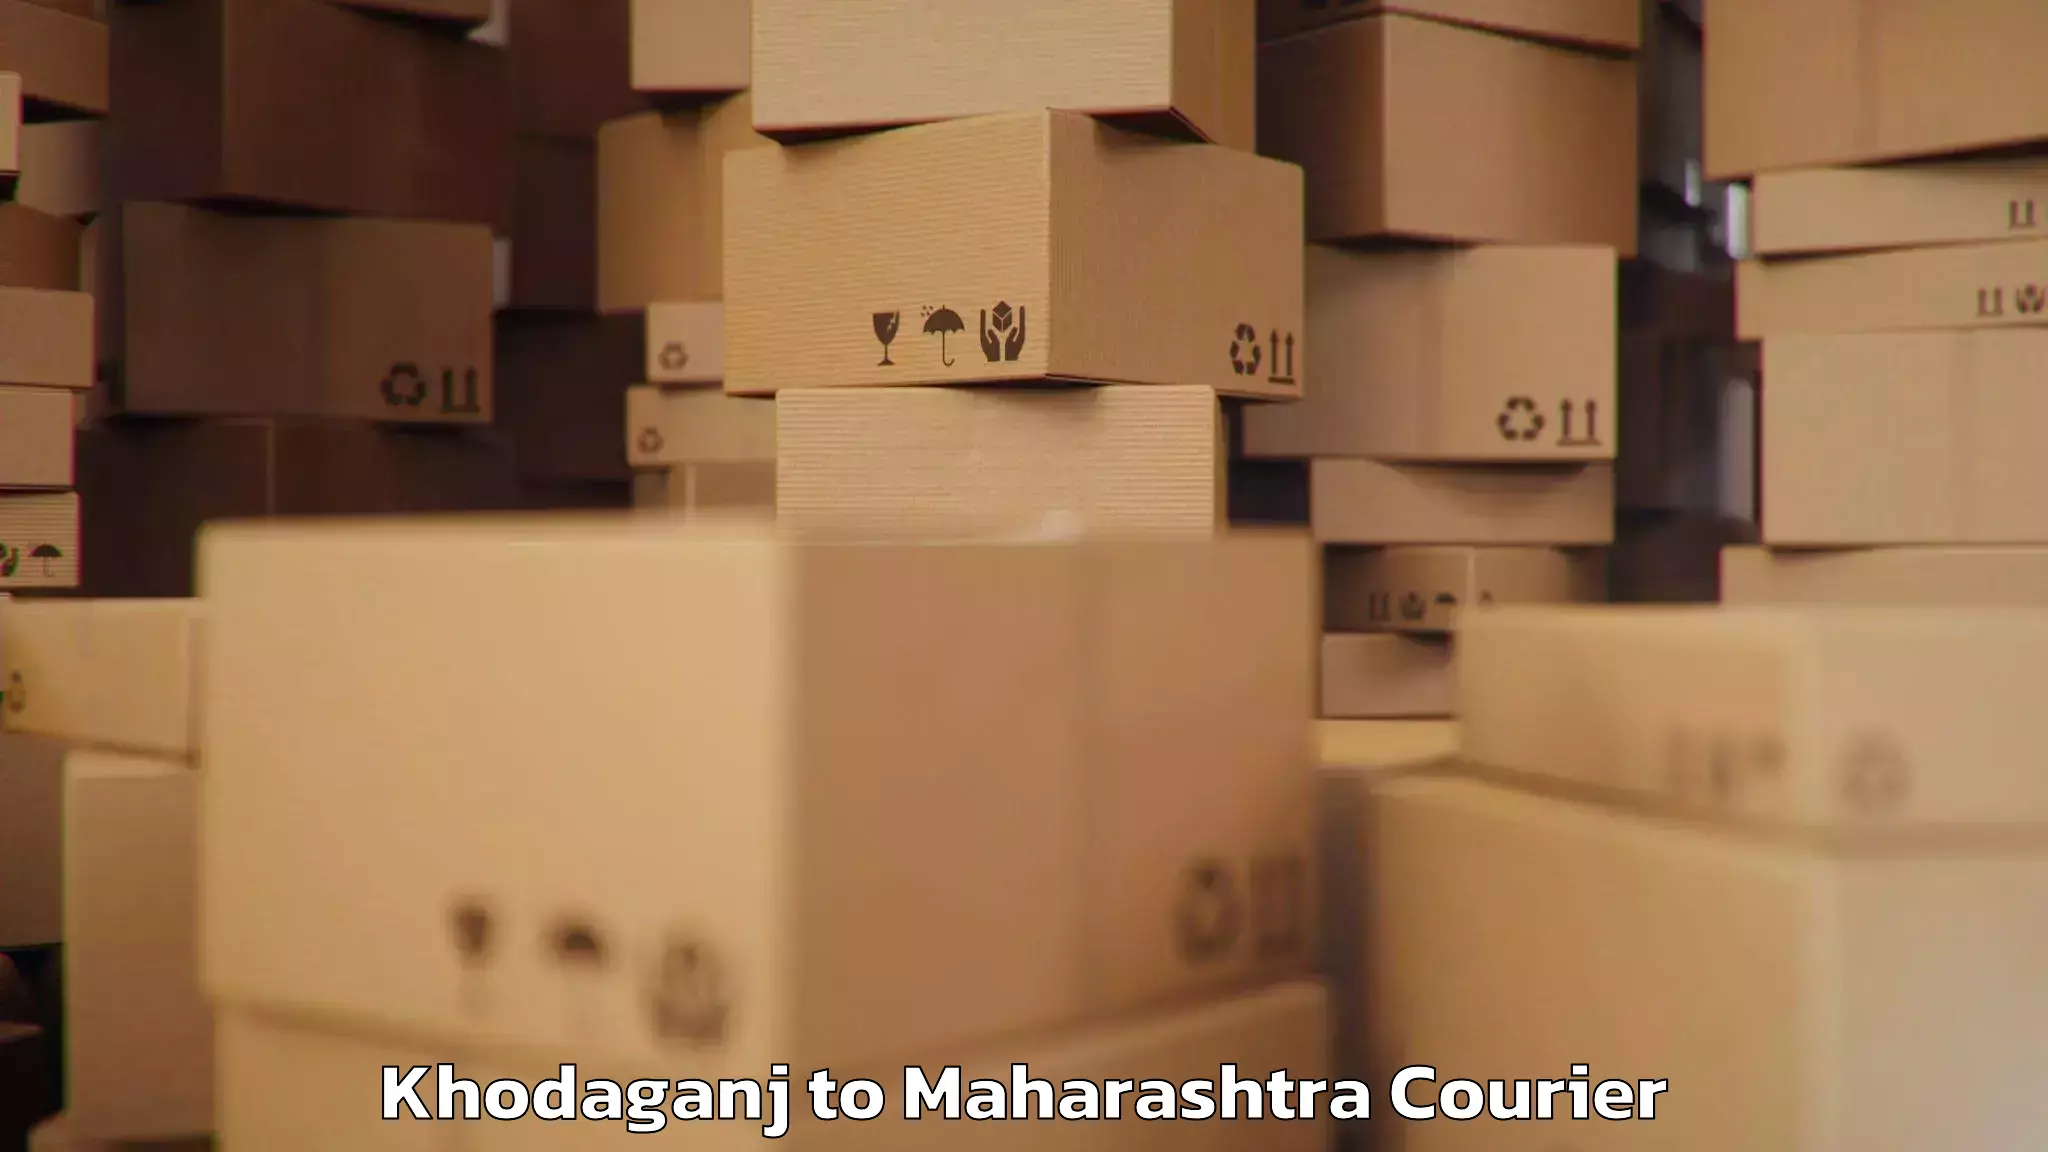 Baggage delivery management Khodaganj to Maharashtra